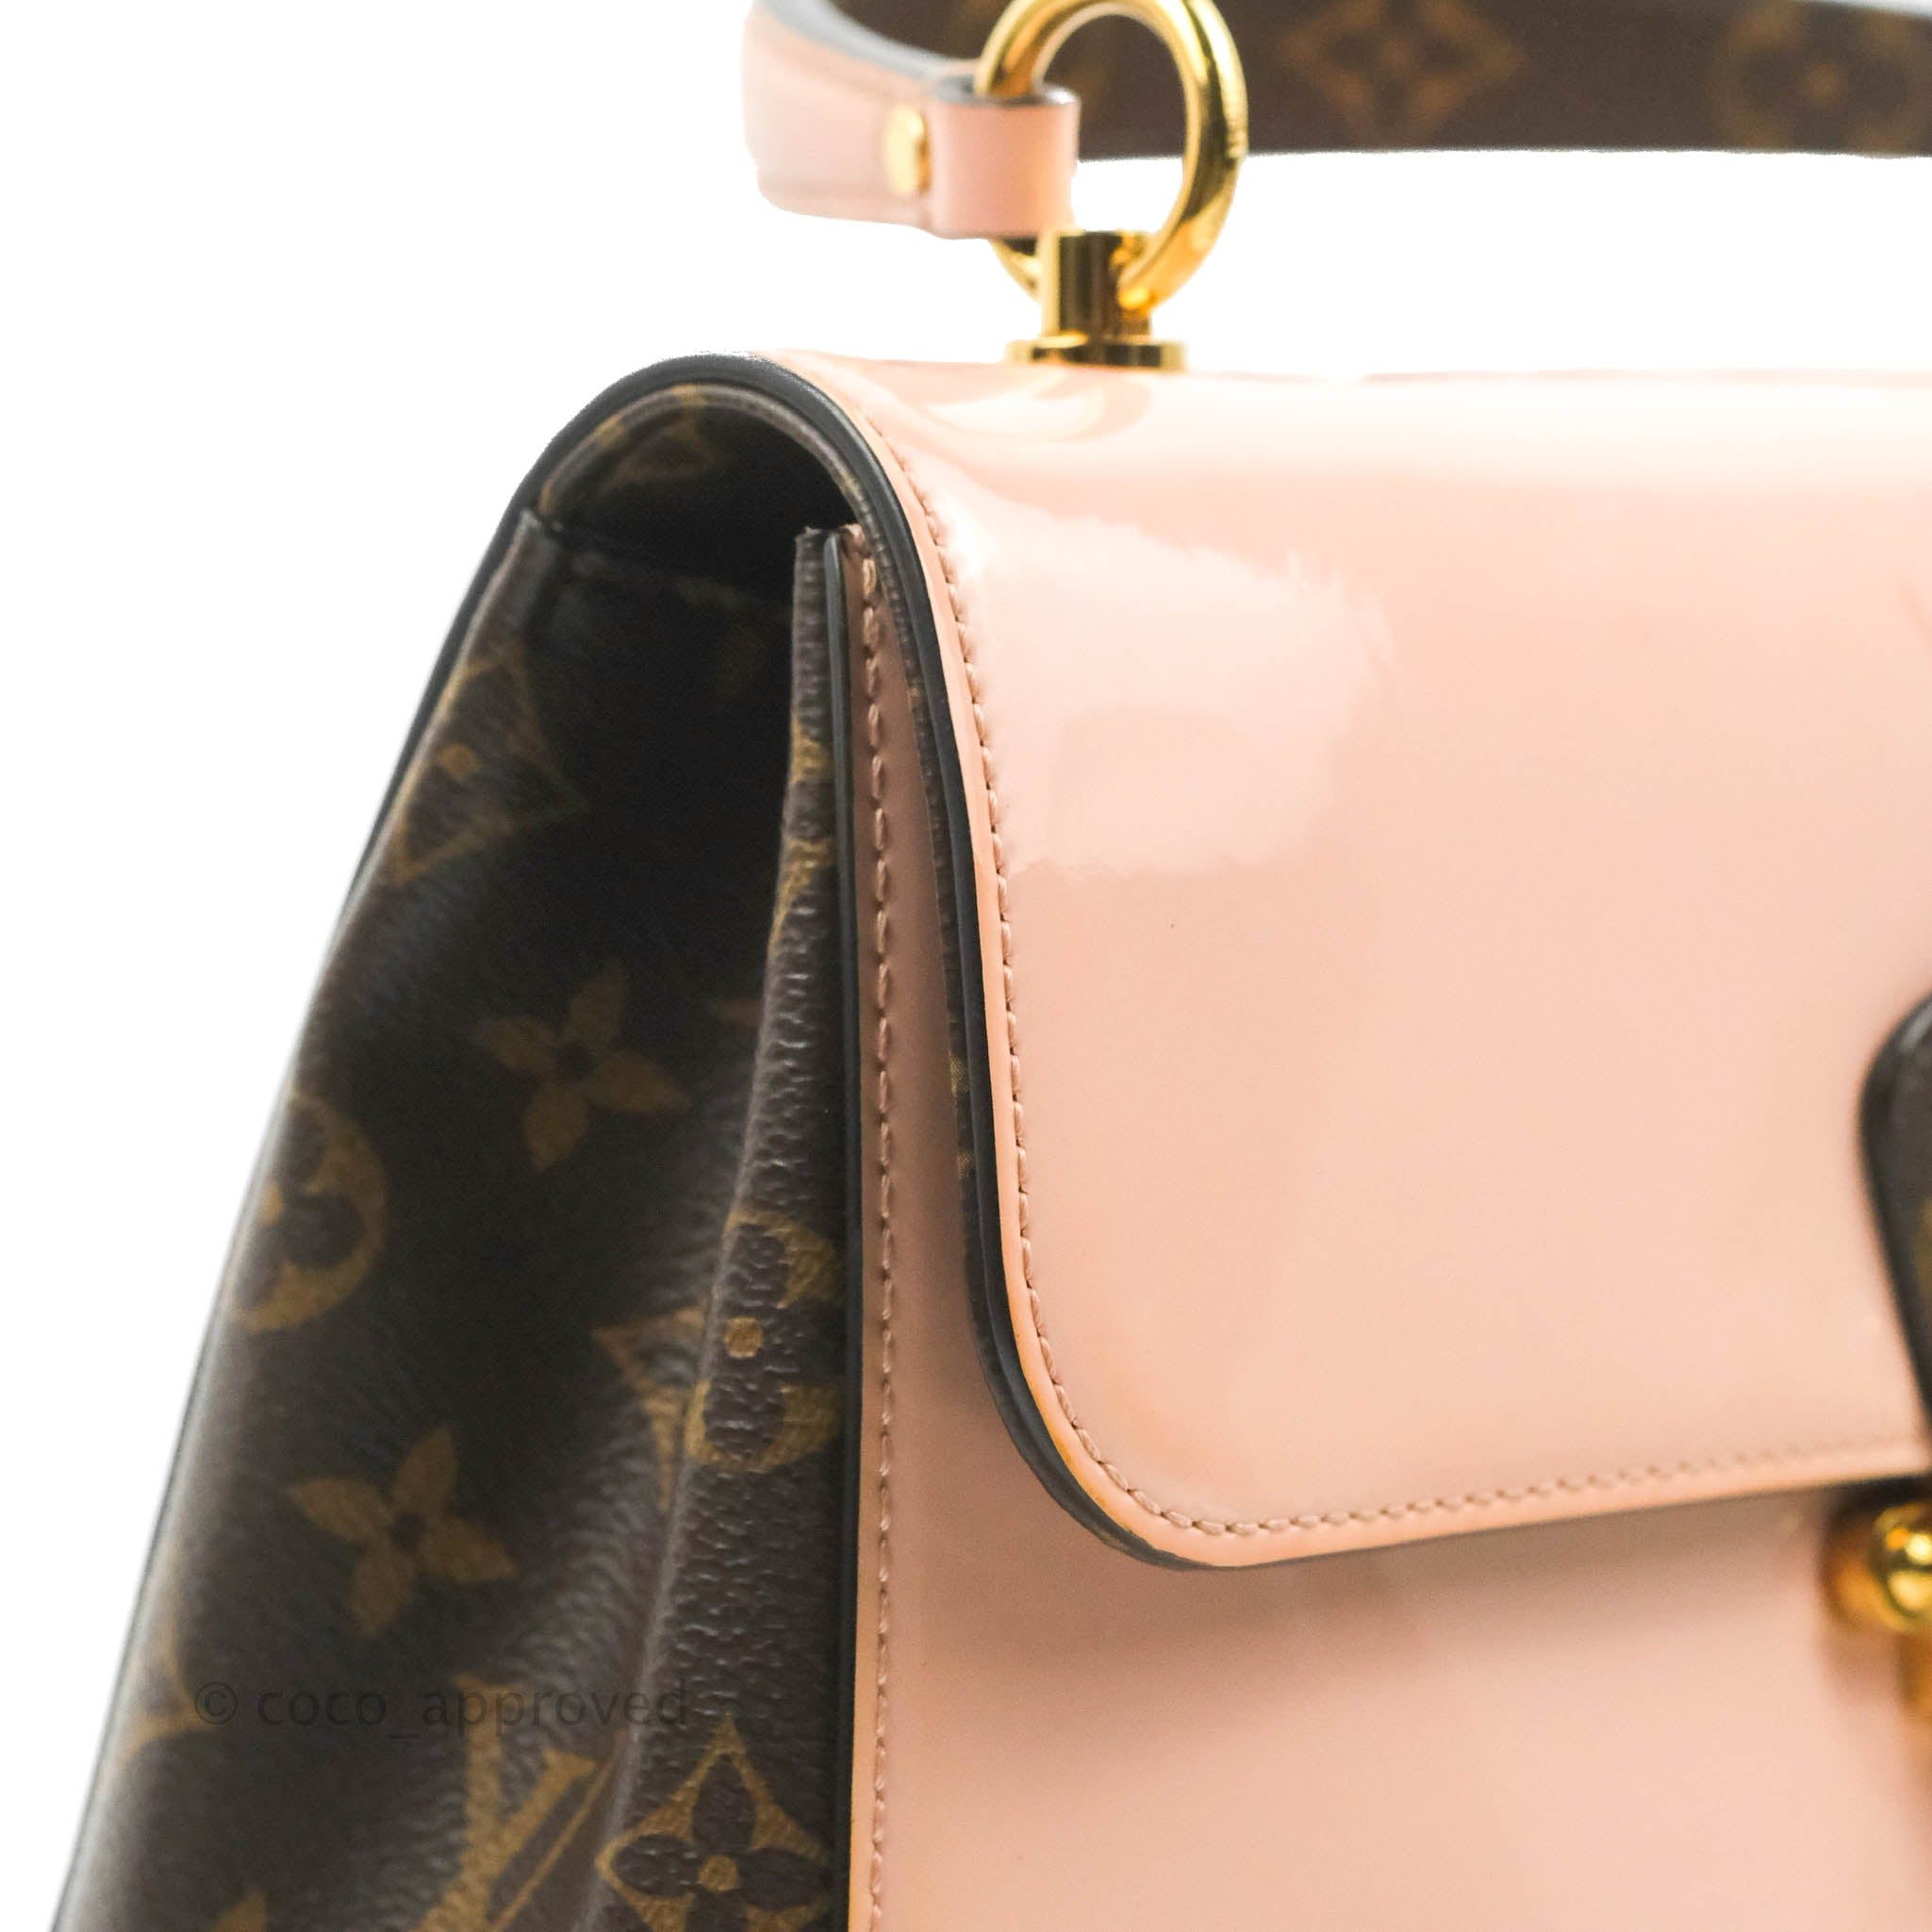 Louis Vuitton Cherrywood Top Handle Handbag - More Than You Can